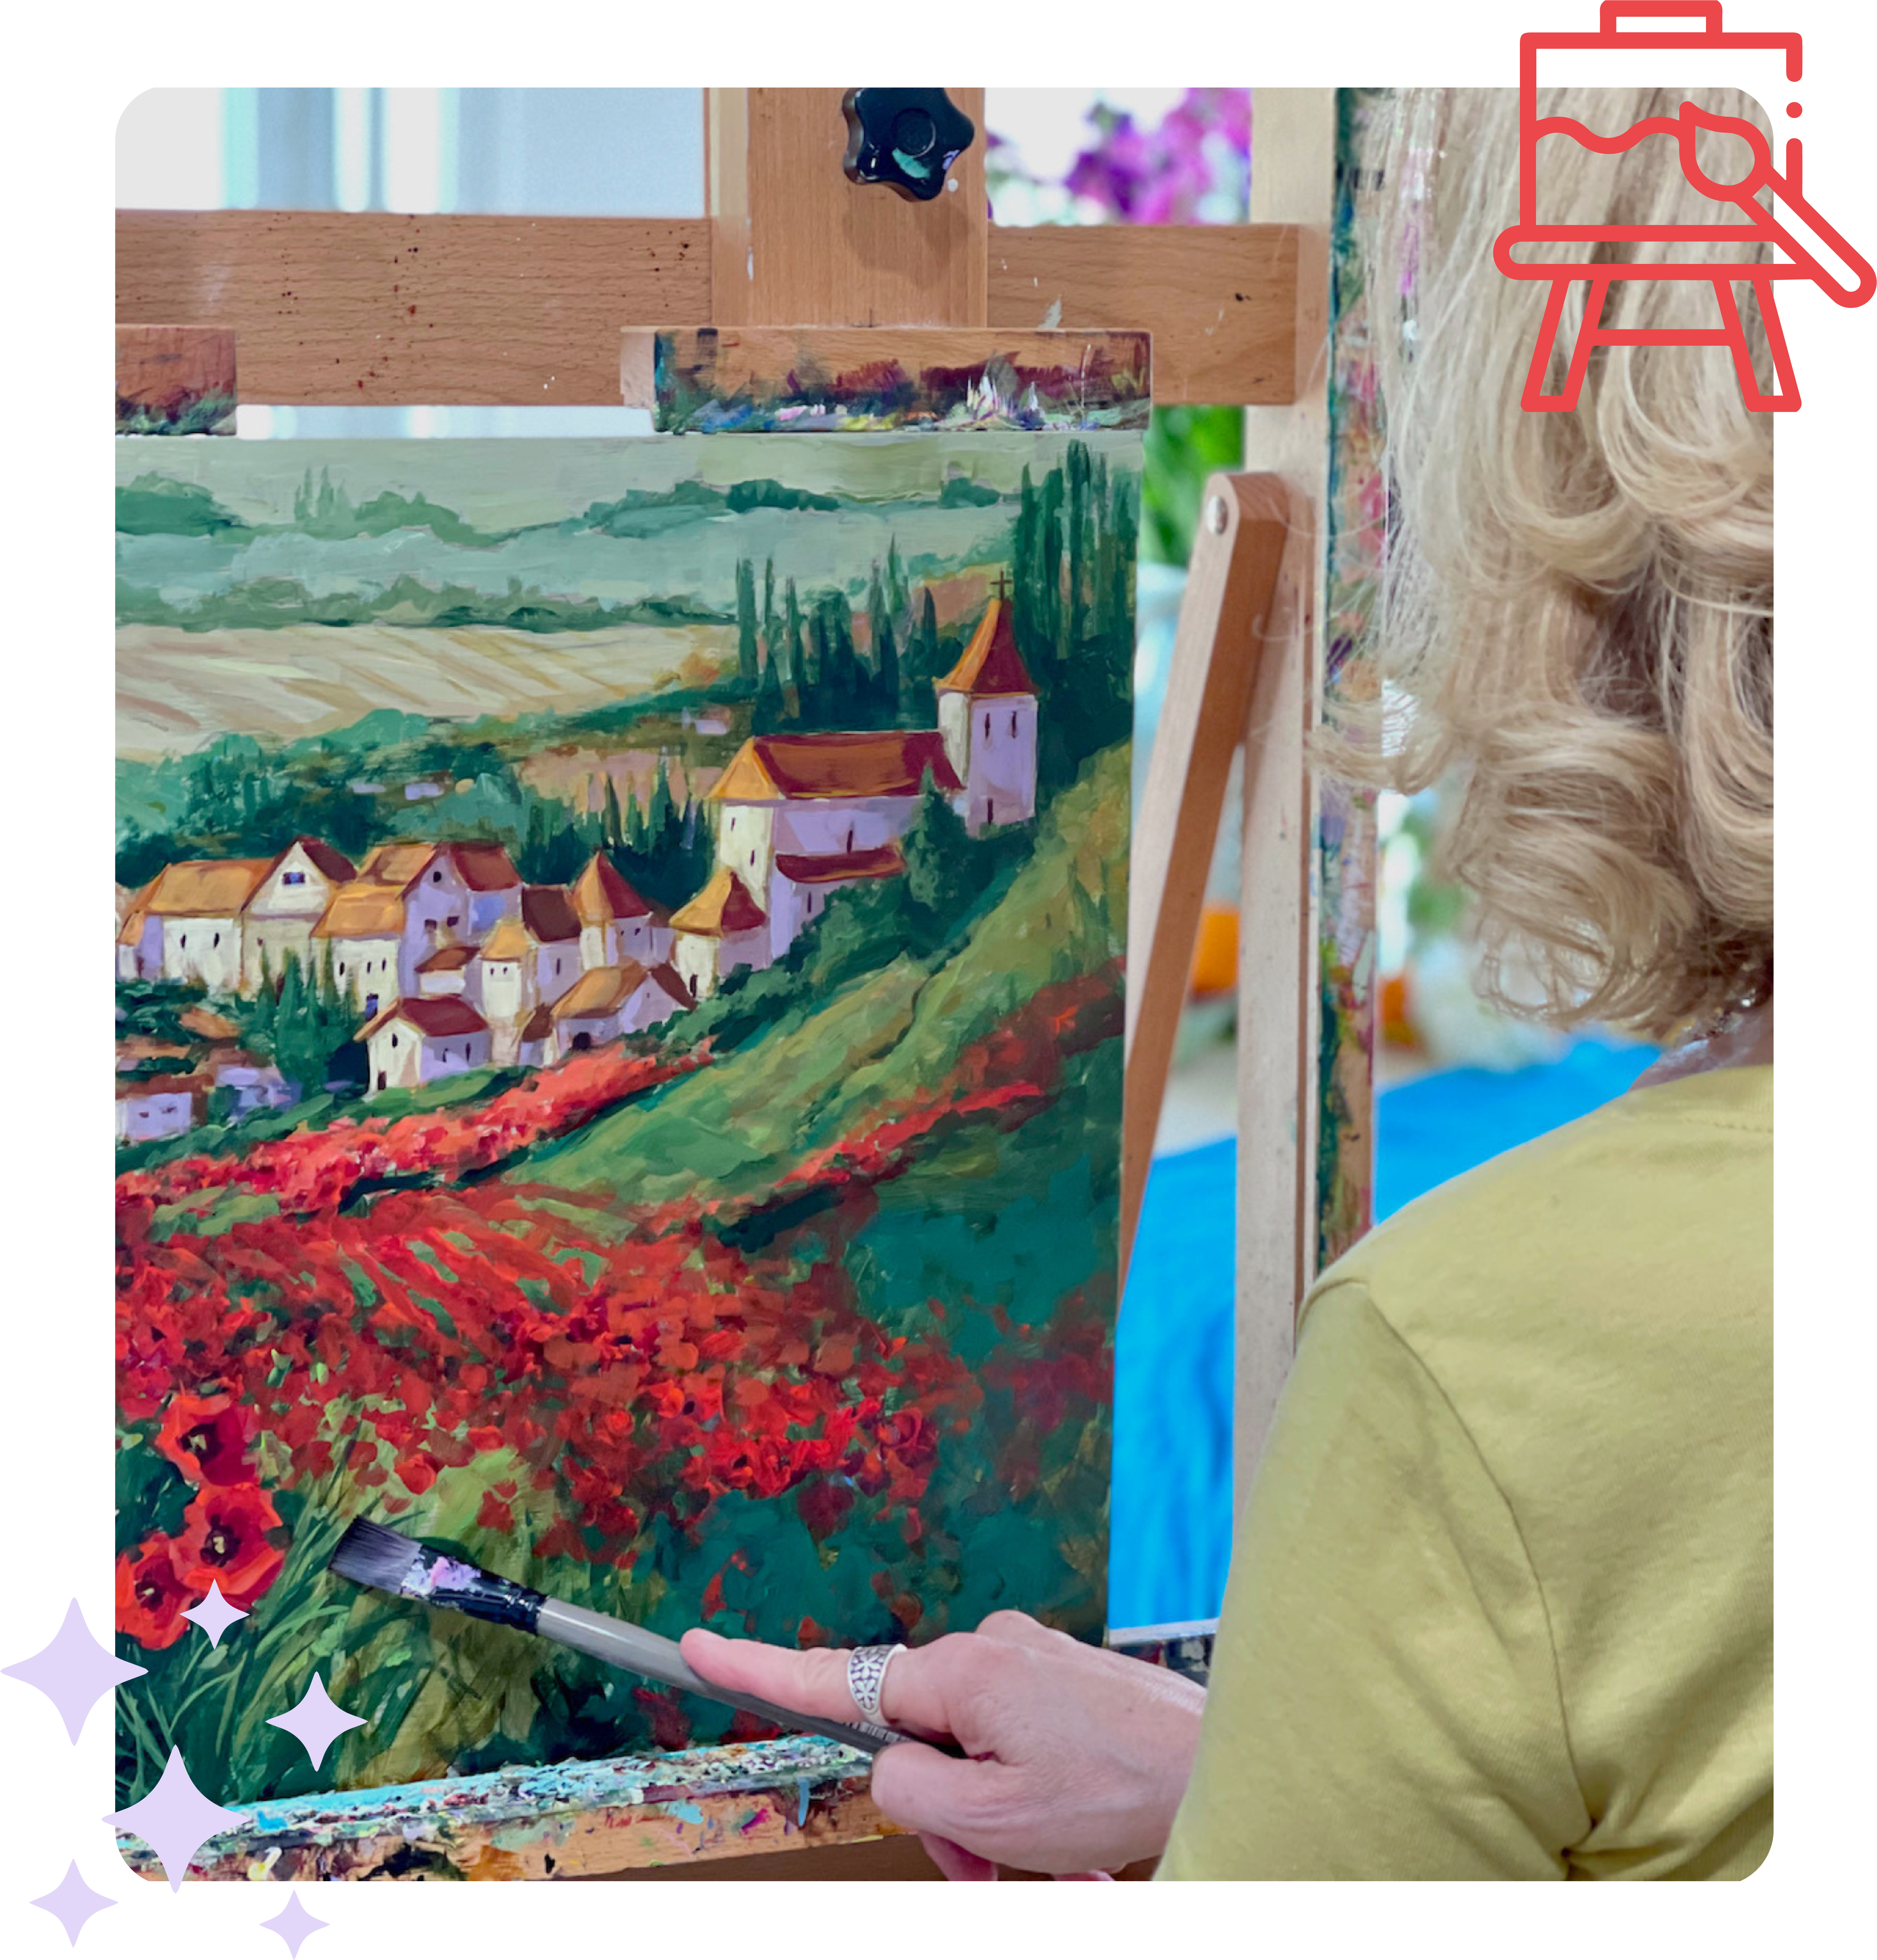 Nancy painting landscape